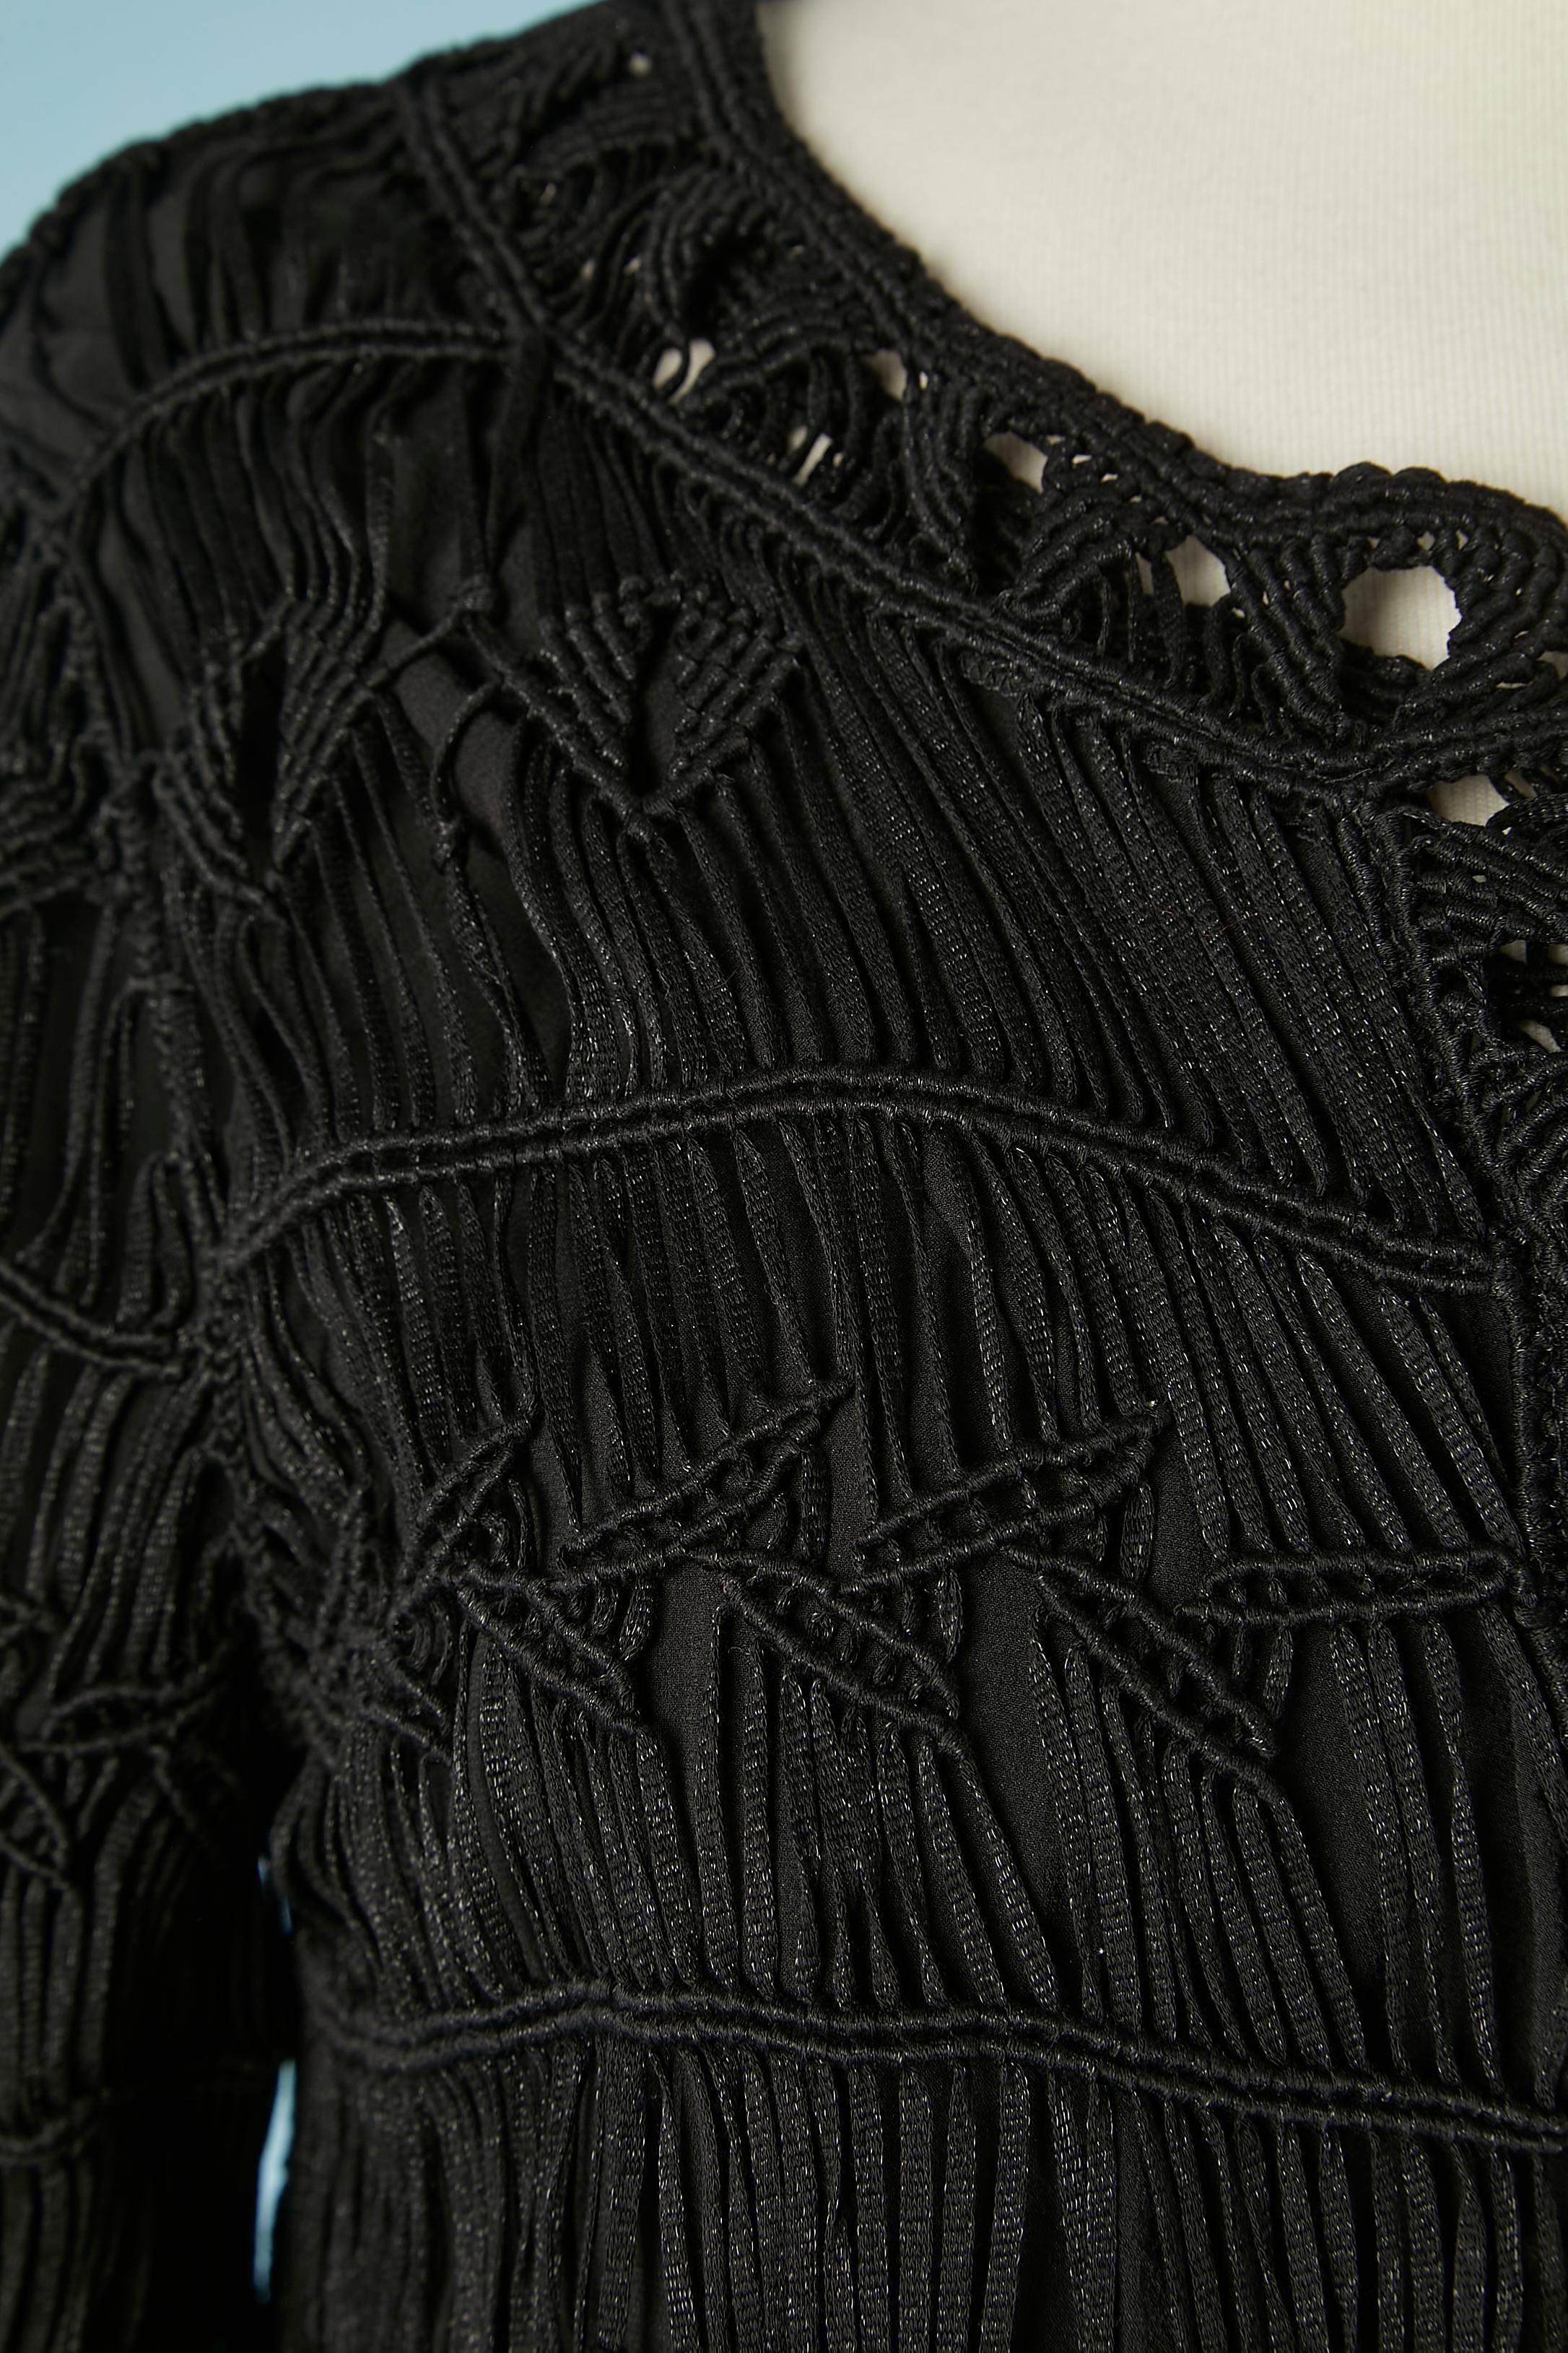 Ensemble Coates et robe en passementerie noire. Composition de la coque : 83% coton, 17% nylon. Doublure : 93% soie, 7% spandex.
Hologramme d'authenticité
TAILLE L